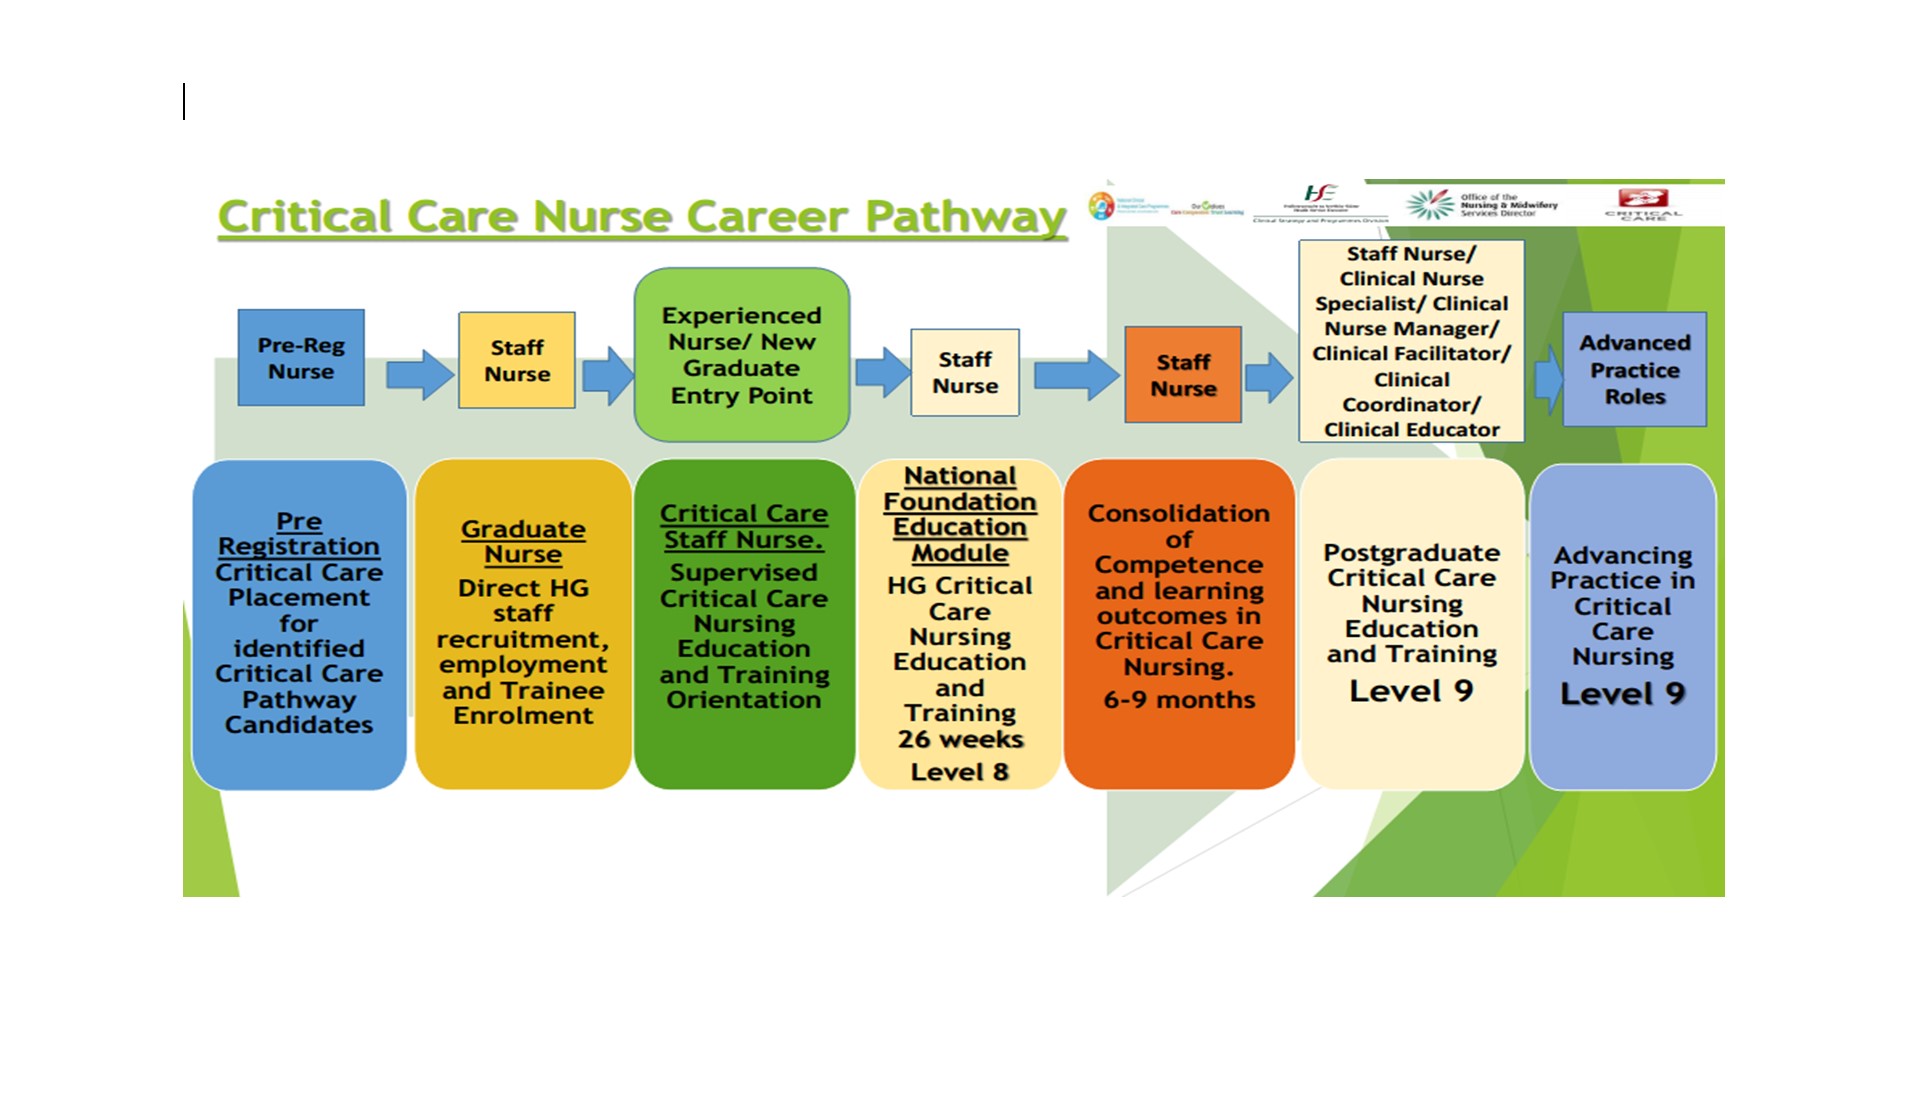 Critical Care Nurse Career Pathway 